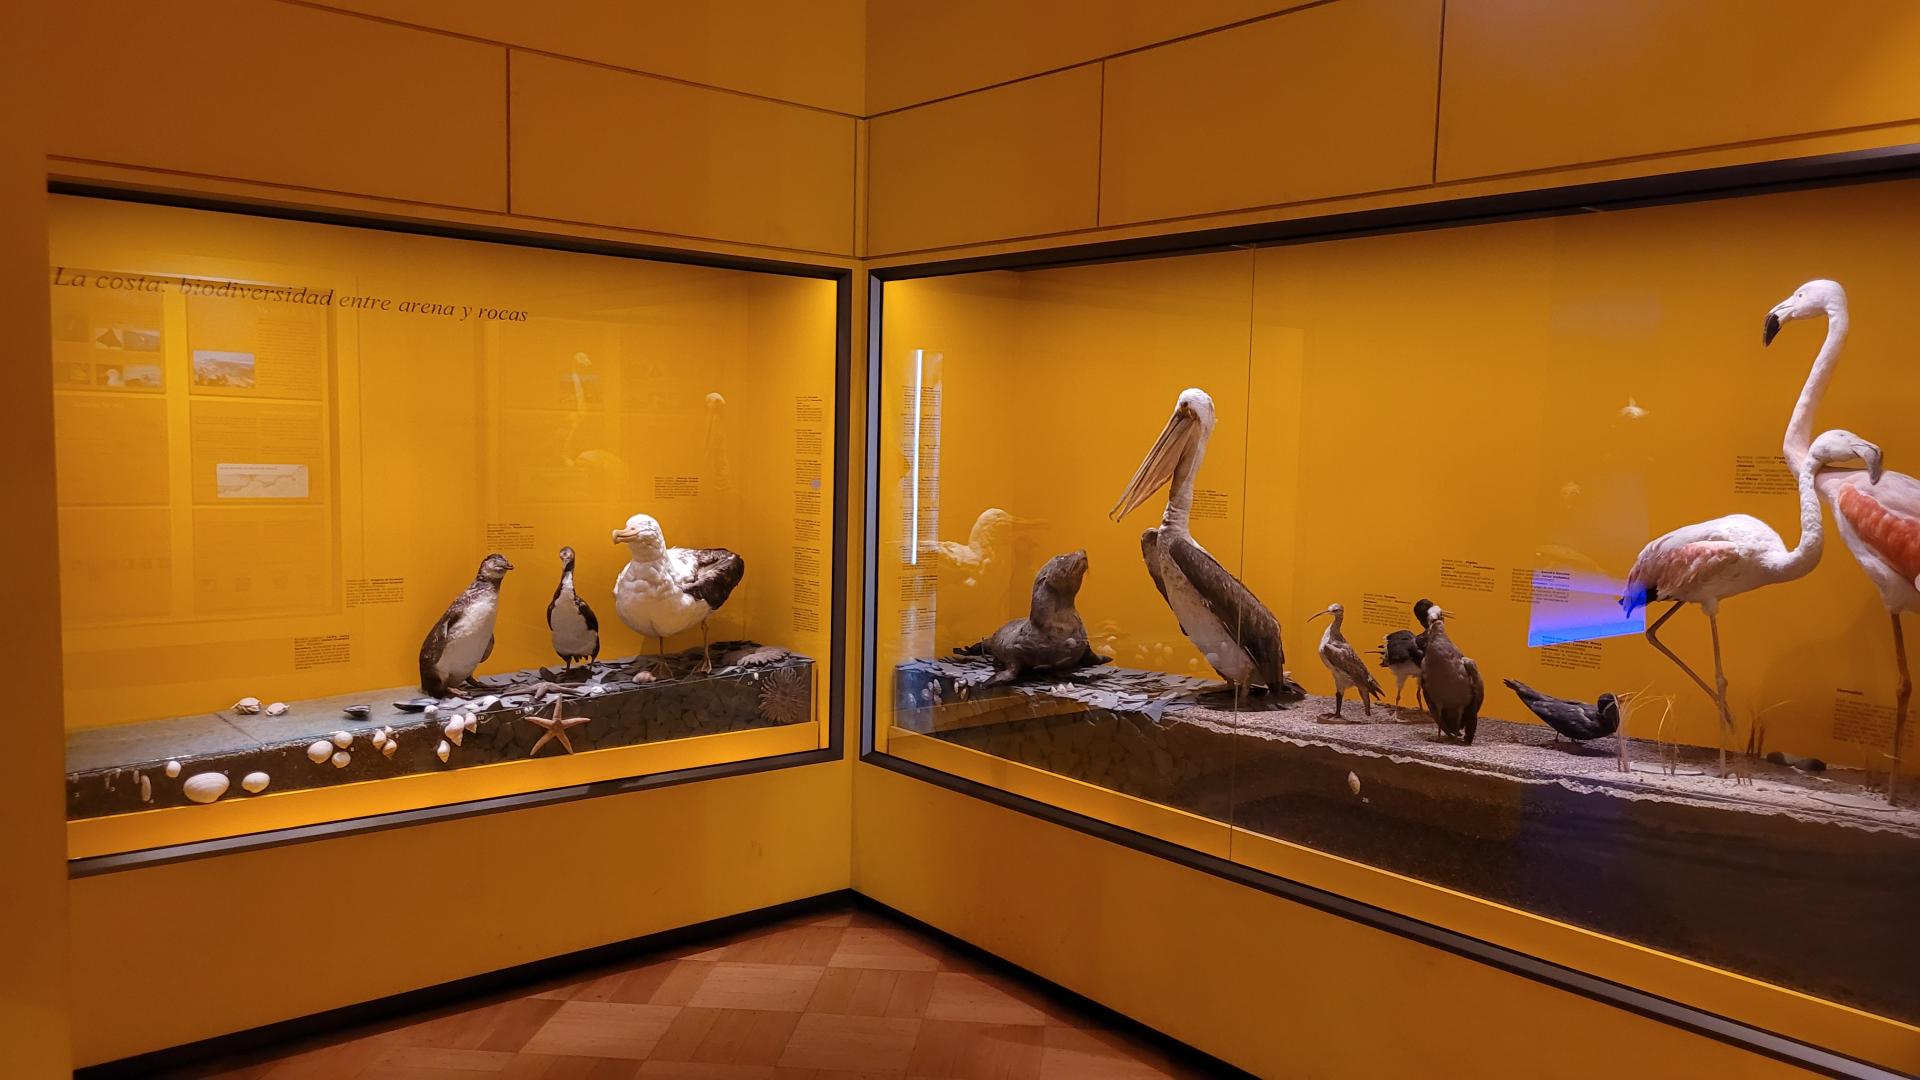 Sala Costa que exhibe importantes individuos de la fauna de la costa de la zona central de Chile